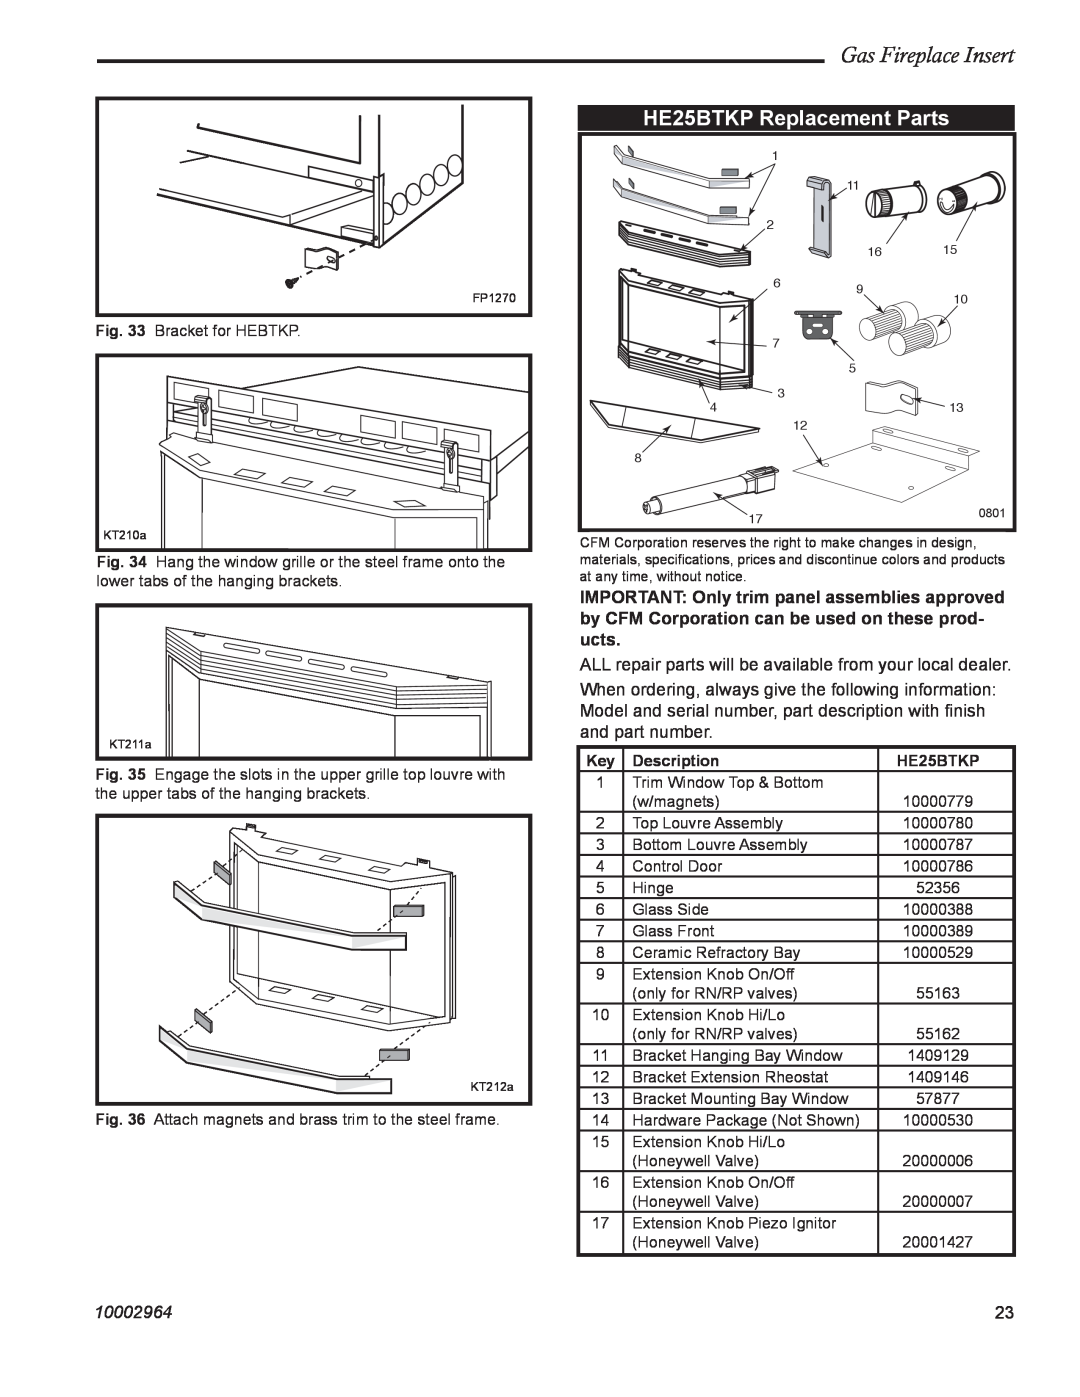 CFM Corporation A132, A125 manual HE25BTKP Replacement Parts, Gas Fireplace Insert, 10002964, Description 